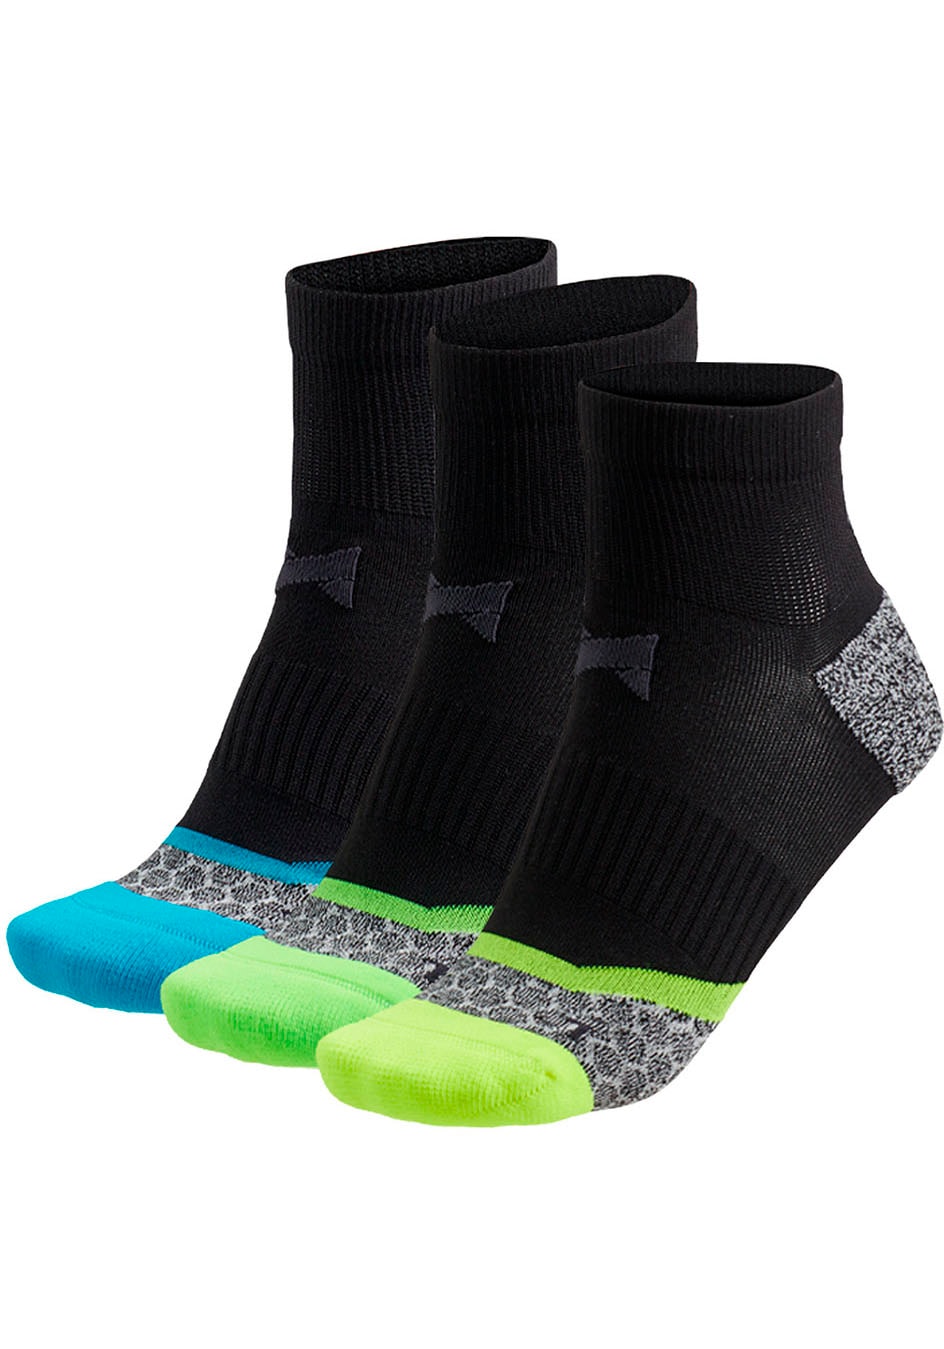 XTREME sockswear Puskojinės (3 poros)